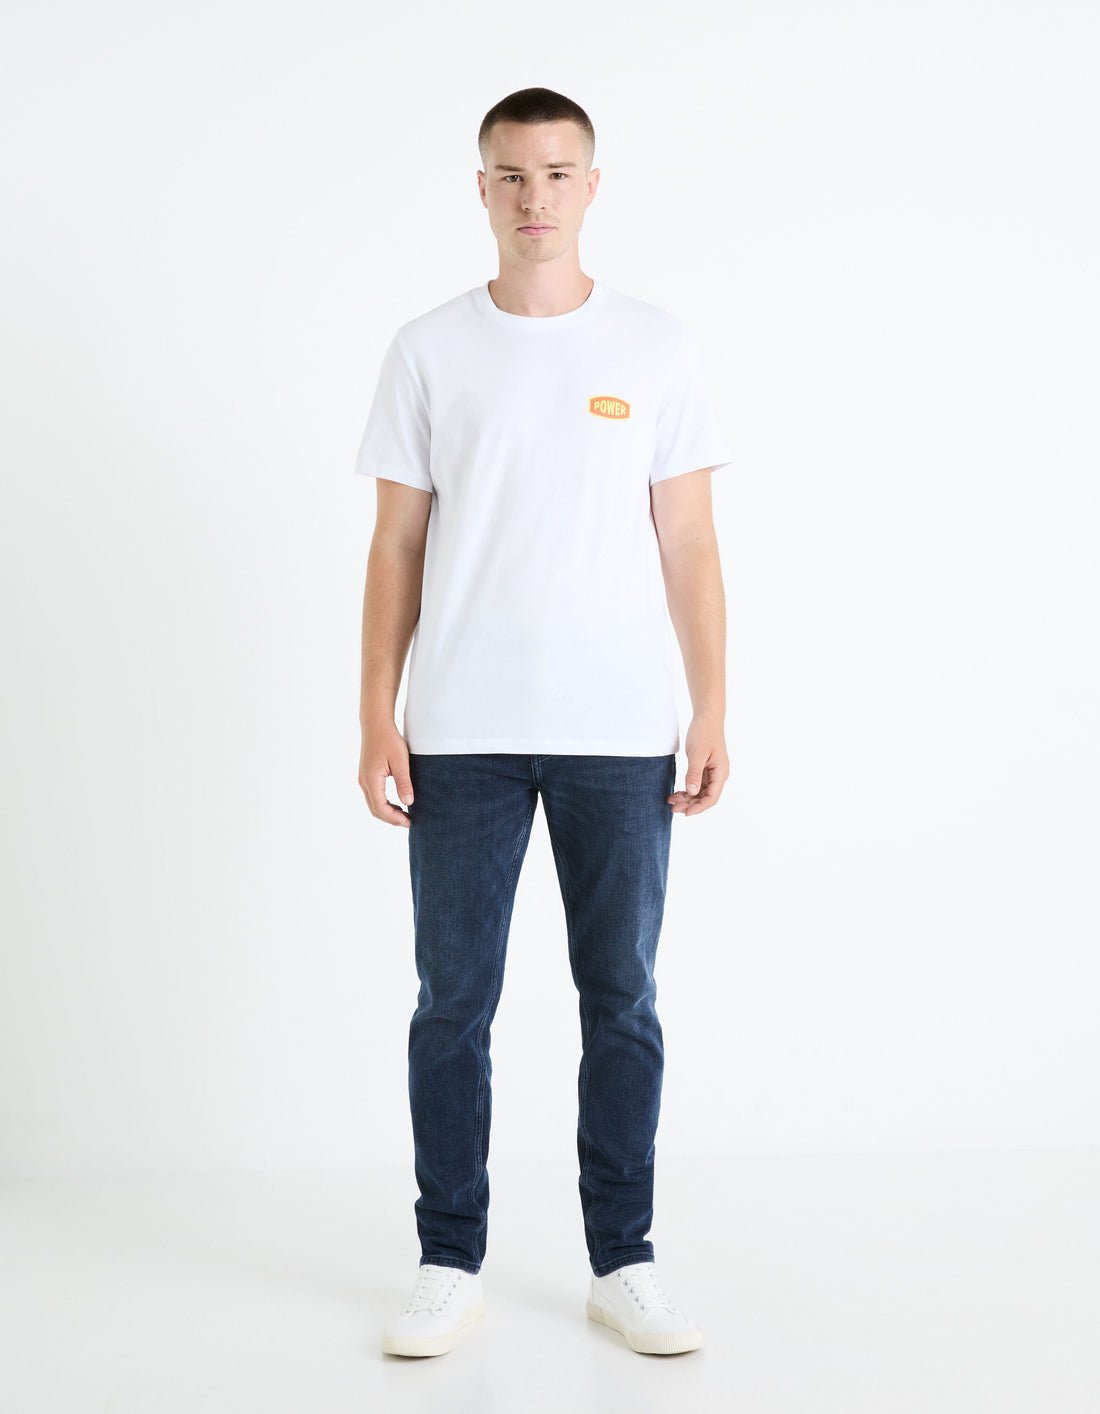 Round Neck T-Shirt 100% Cotton_FETEXTO_OPTICAL WHITE_02